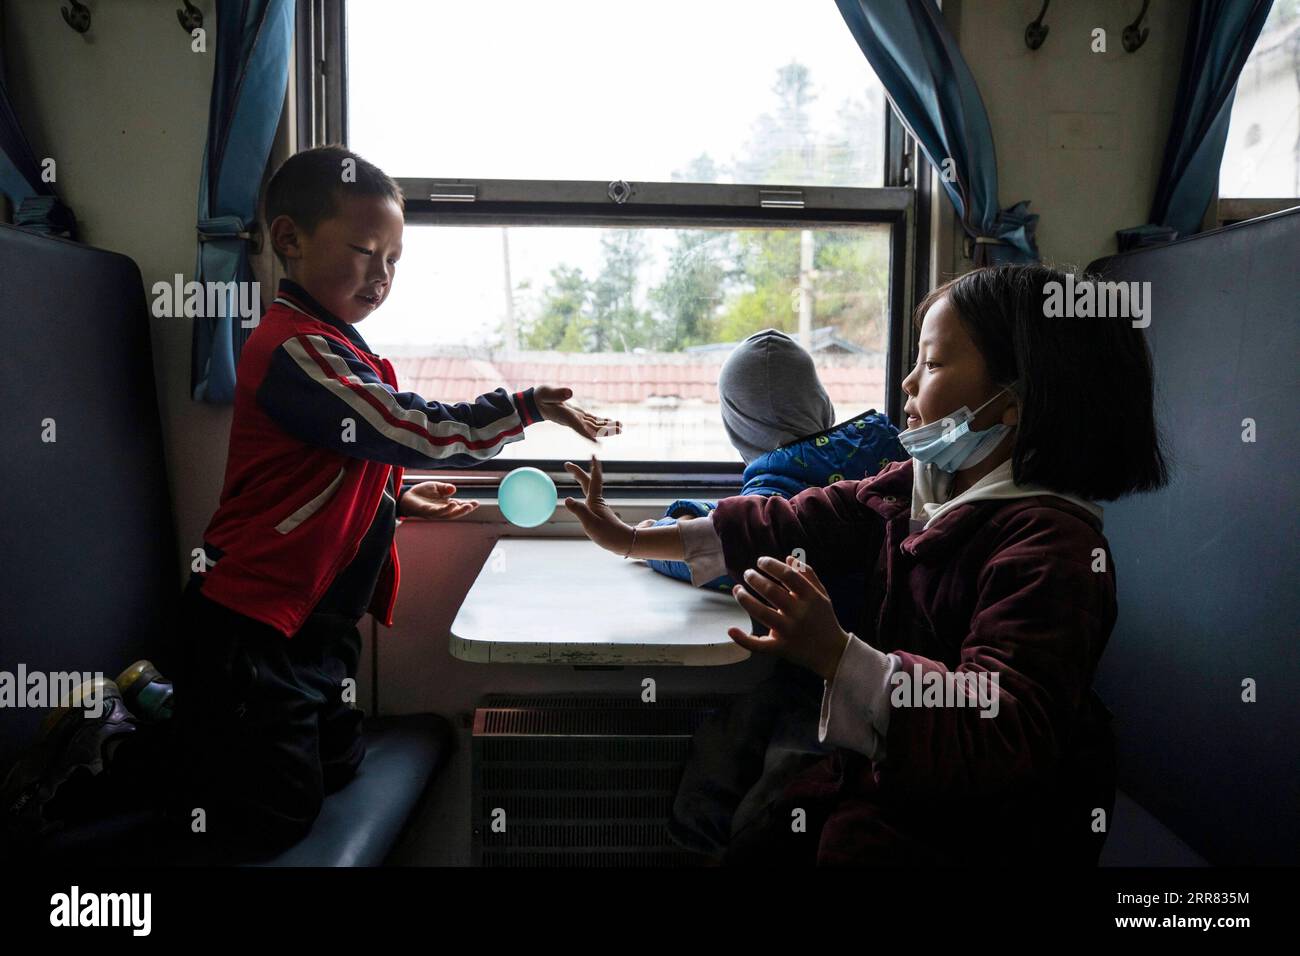 210415 -- XICHANG, 15. April 2021 -- Kinder fahren mit dem Zug 5633 zur Schule in der südwestchinesischen Provinz Sichuan, 11. April 2021. Während moderne Hochgeschwindigkeitszüge an neuen Bahnhöfen in ganz China vorbeifahren, verkehren noch immer ein Paar langsame Züge durch das Daliang-Gebirge. Die 5633/5634 Züge verkehren zwischen Puxiong und Panzhihua in der Provinz Sichuan mit einer durchschnittlichen Geschwindigkeit von weniger als 40 km/h. Die Fahrt mit 26 Stationen dauert zwischen elf Stunden und vier Minuten, wobei die Ticketpreise zwischen 2 Yuan und 25,5 Yuan etwa 0,3 bis 3,9 US-Dollar betragen. Die langsam fahrenden Züge schicken die Kinder zur Schule Stockfoto